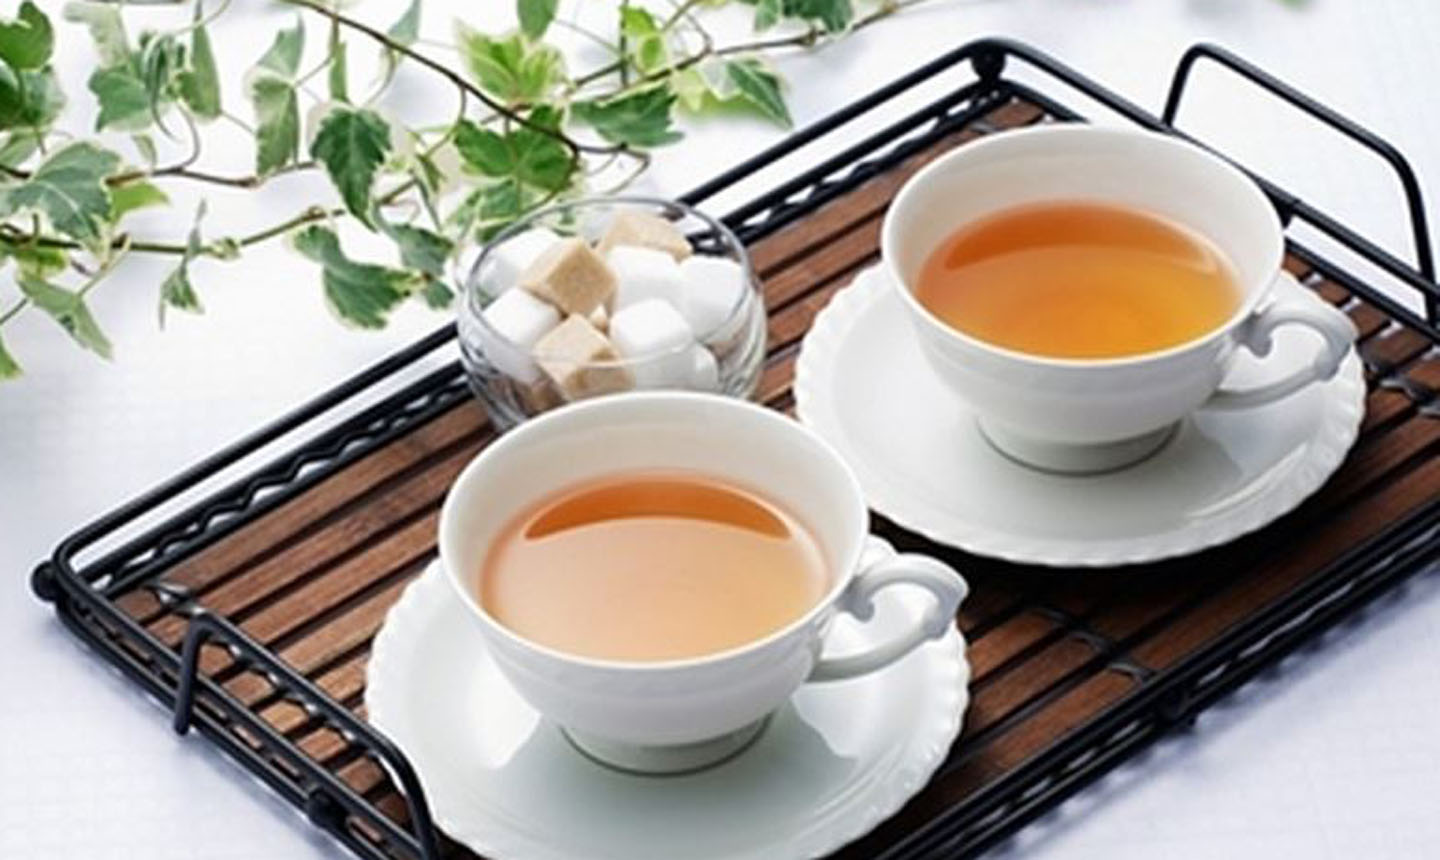  Kết hợp trà với các vị thuốc còn có tác dụng phòng và chữa bệnh rất hiệu quả